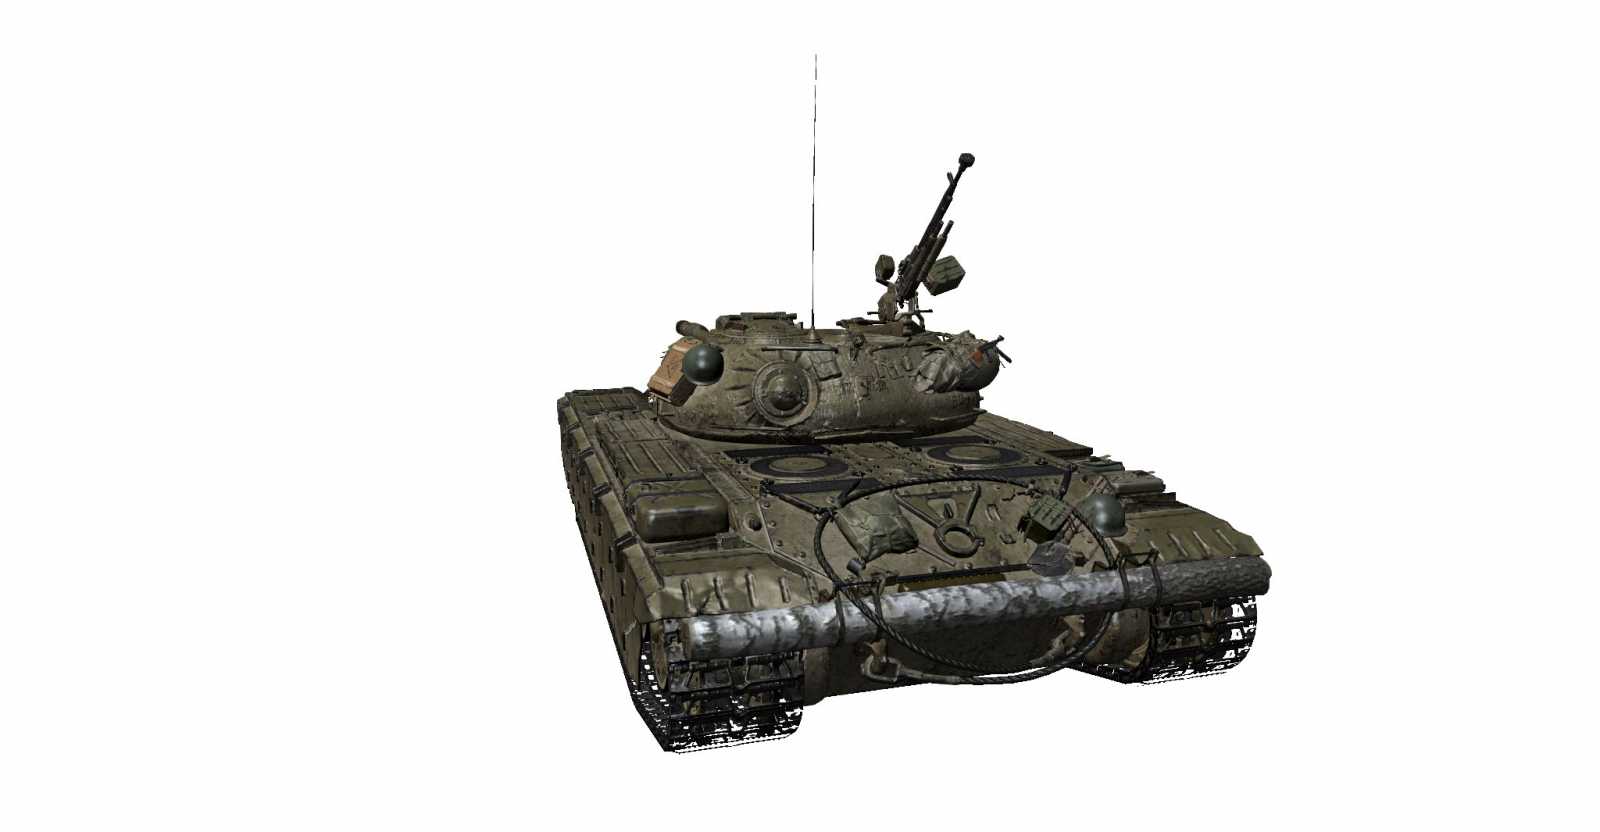 Více informací o tanku Czołg T wz51